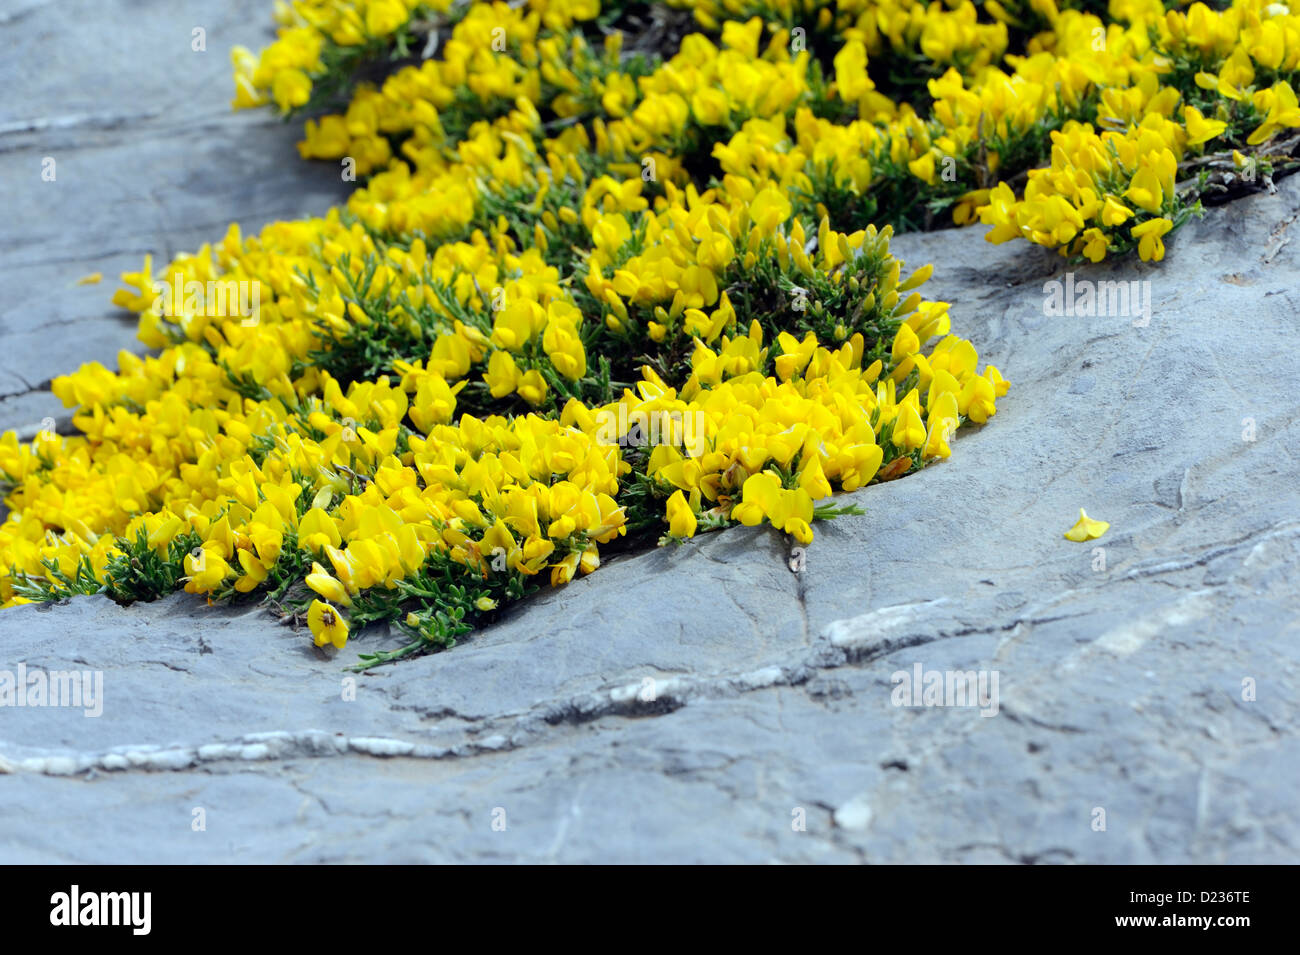 Alpine Pflanzen wachsen in Kalkfelsen. Fuente De, Nationalpark Picos de Europa. Picos de Europa. Spanien Stockfoto